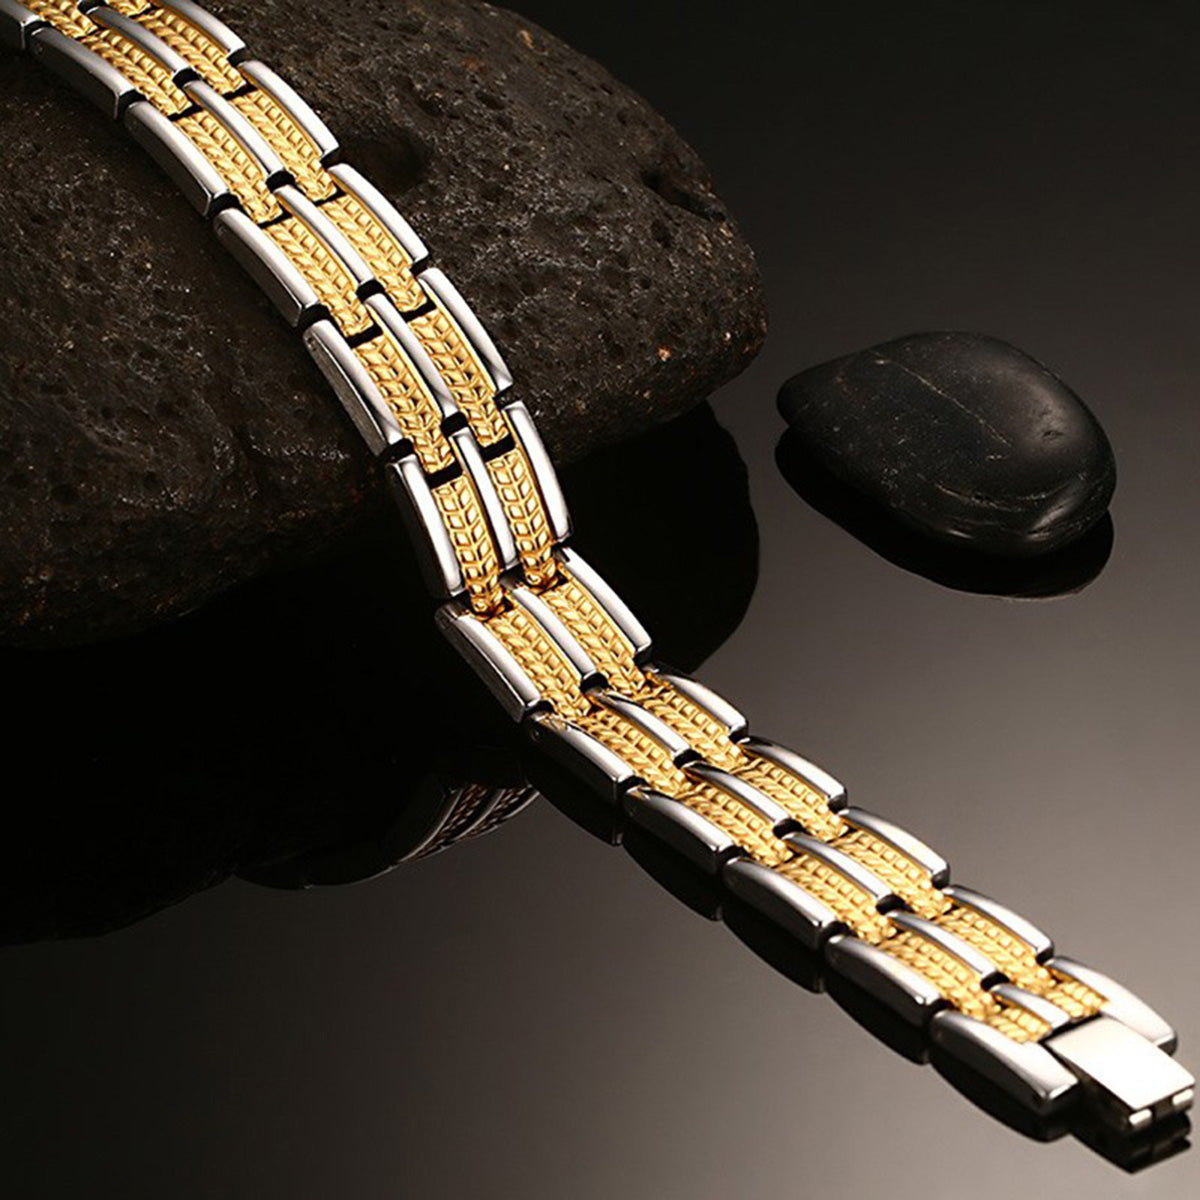 Buy Real Gold Design Pure Gold Plated Wedding Bracelet For Men